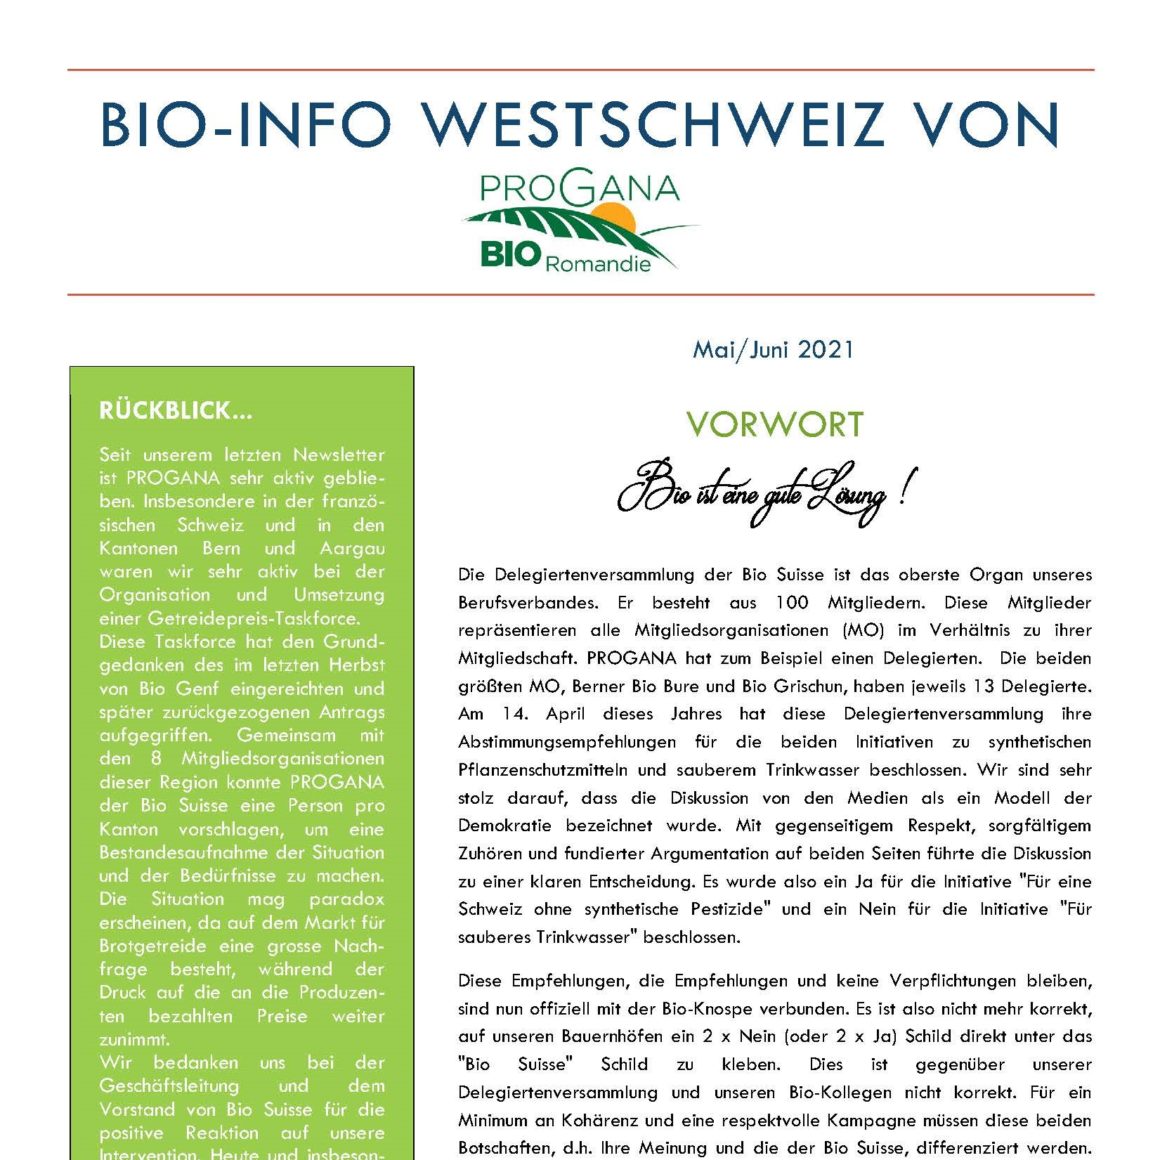 PROGANA präsentiert: Bio-Info Westschweiz!